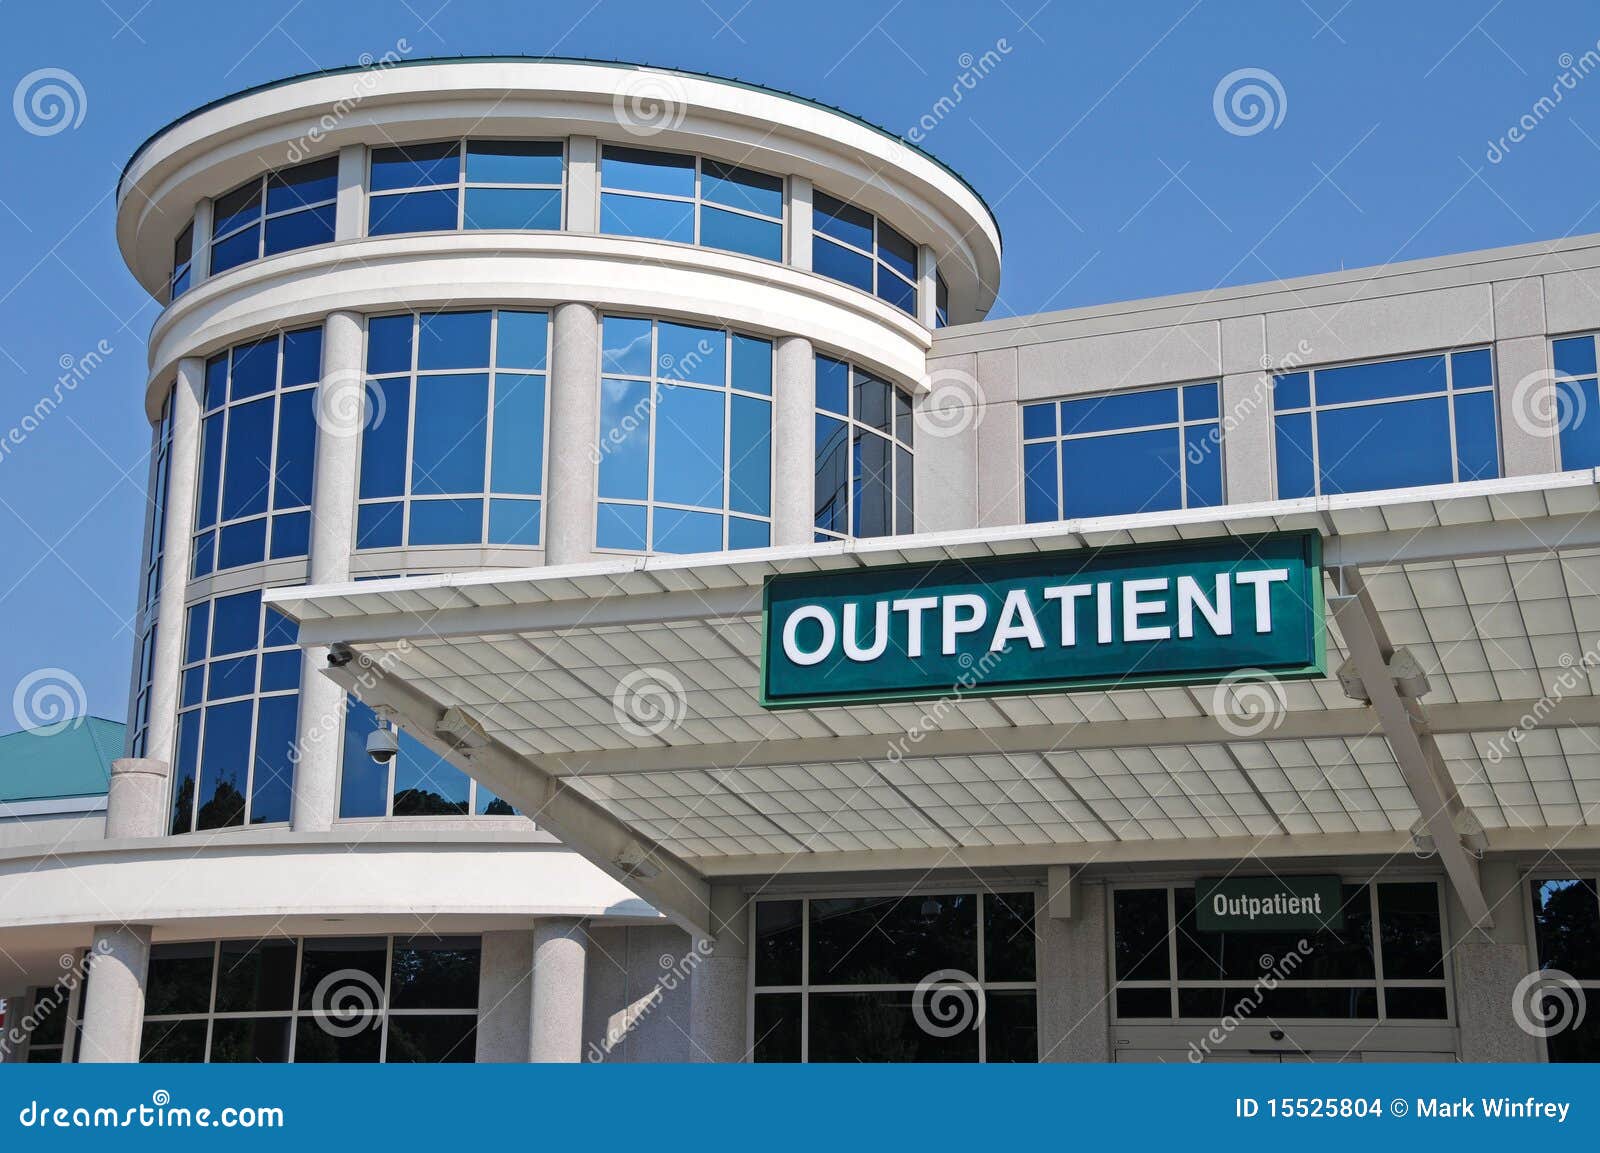 hospital outpatient entrance sign